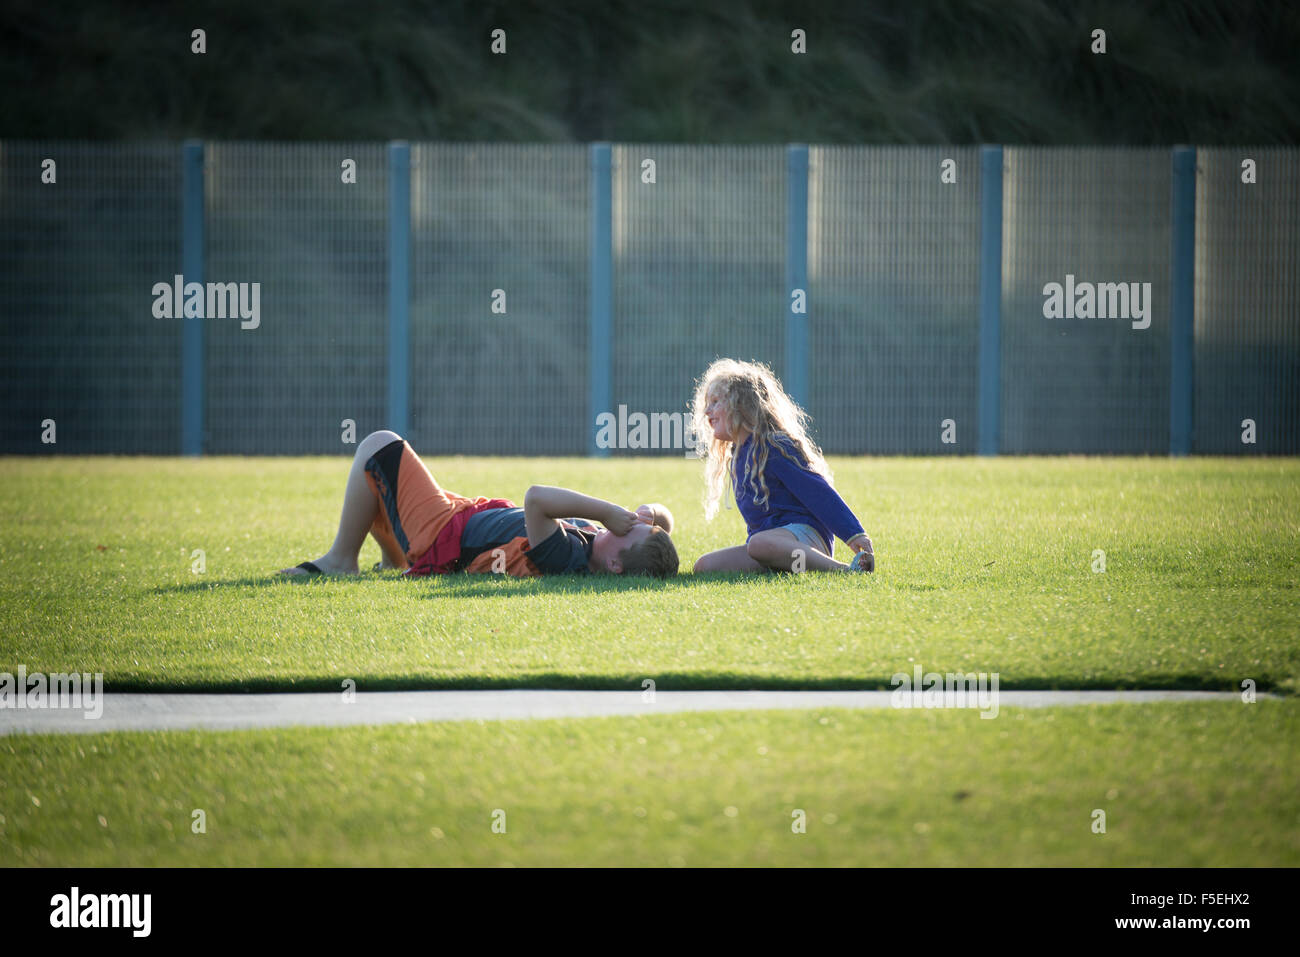 Niño y niña hablando en un campo de fútbol Foto de stock